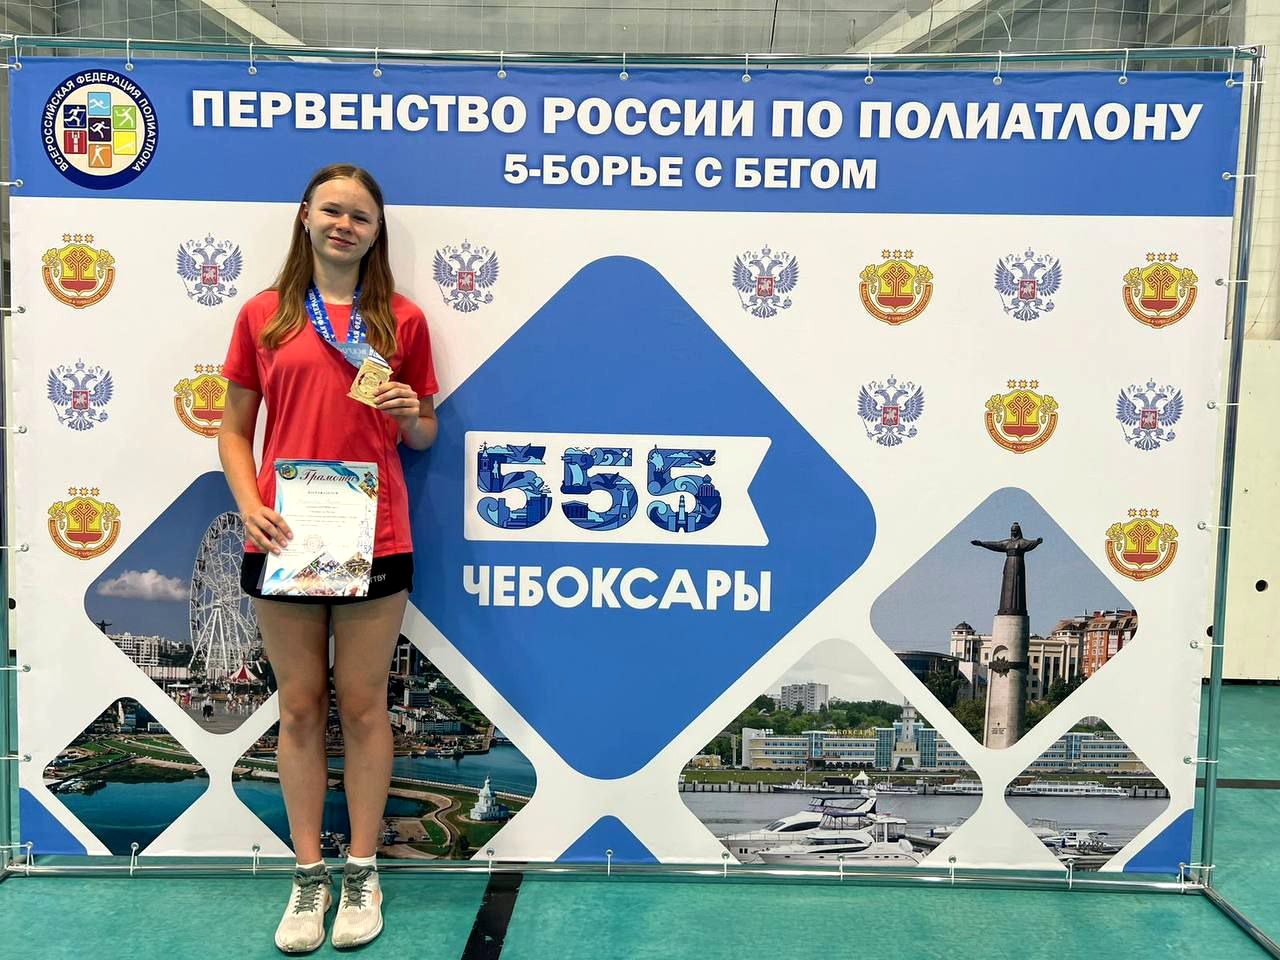 Ракитянка Полина Жерновая – победительница первенства России по полиатлону в спортивной дисциплине пятиборье с бегом.